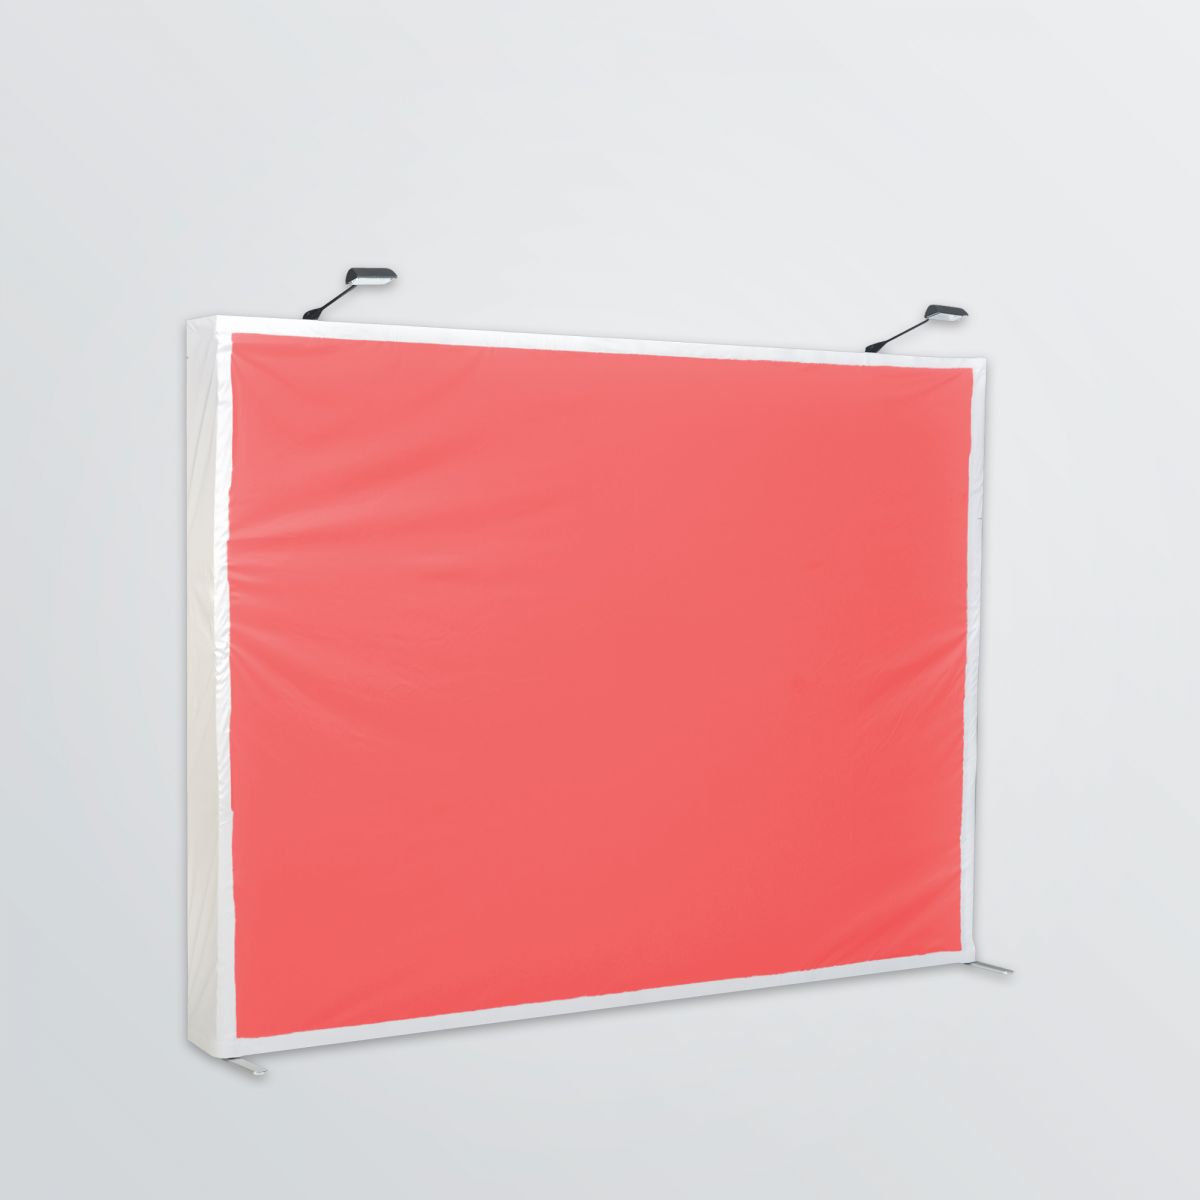 Aufgestelltes Display mit Beleuchtung und Aluminiumkonstruktion individuell gestaltbar - rotes Farbbeispiel